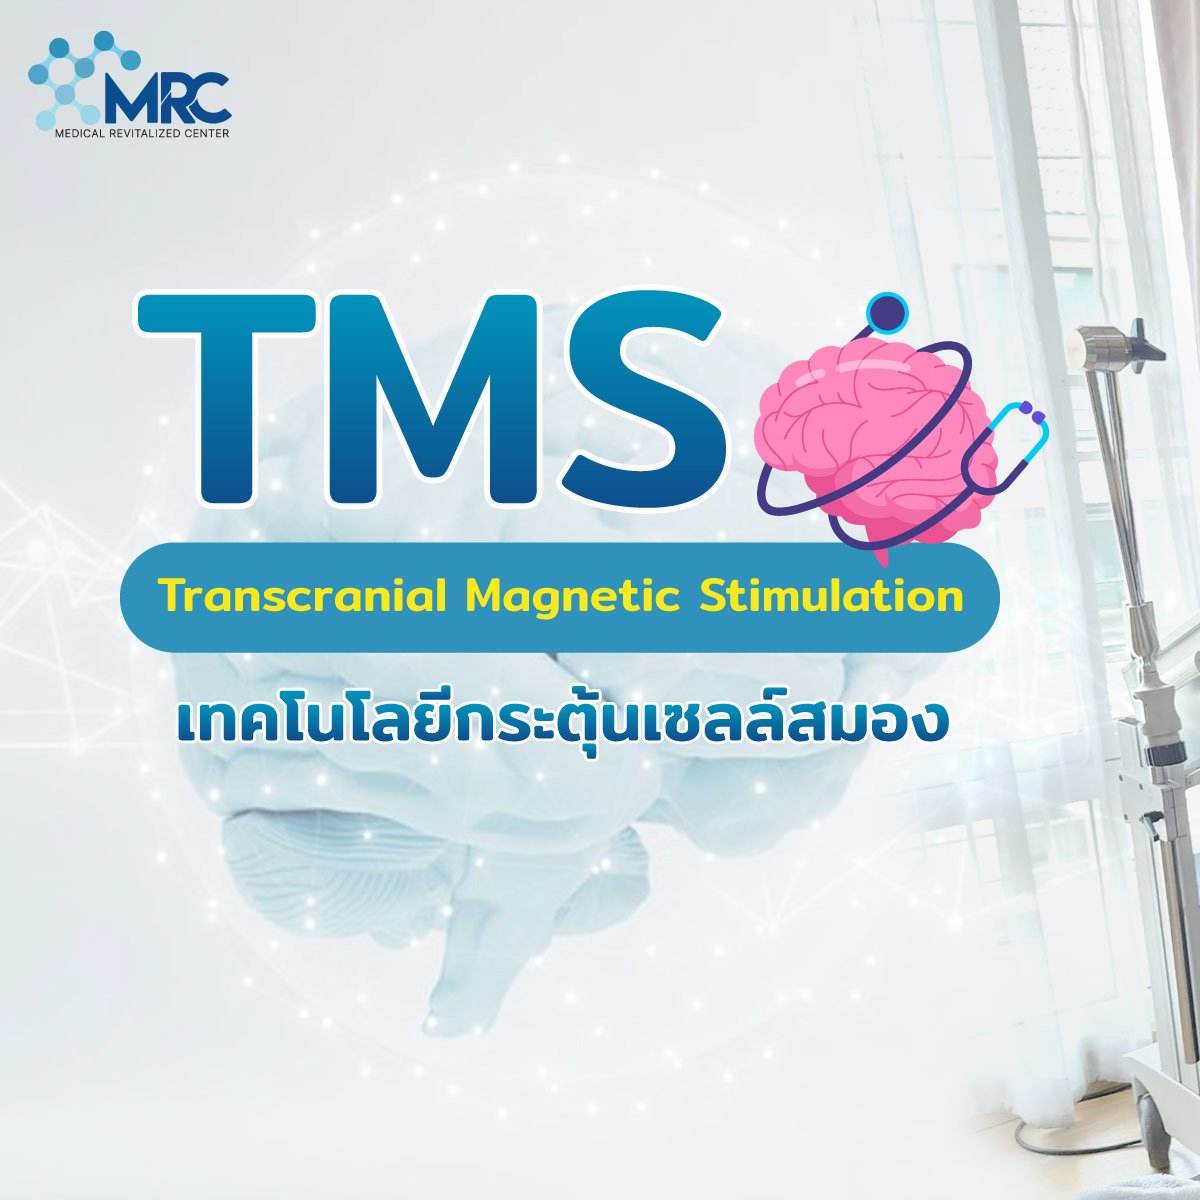 เทคโนโลยีในการรักษาฟื้นฟูสมองแบบใหม่ล่าสุดด้วยเครื่อง TMS (Transcranial Magnetic Stimulation)